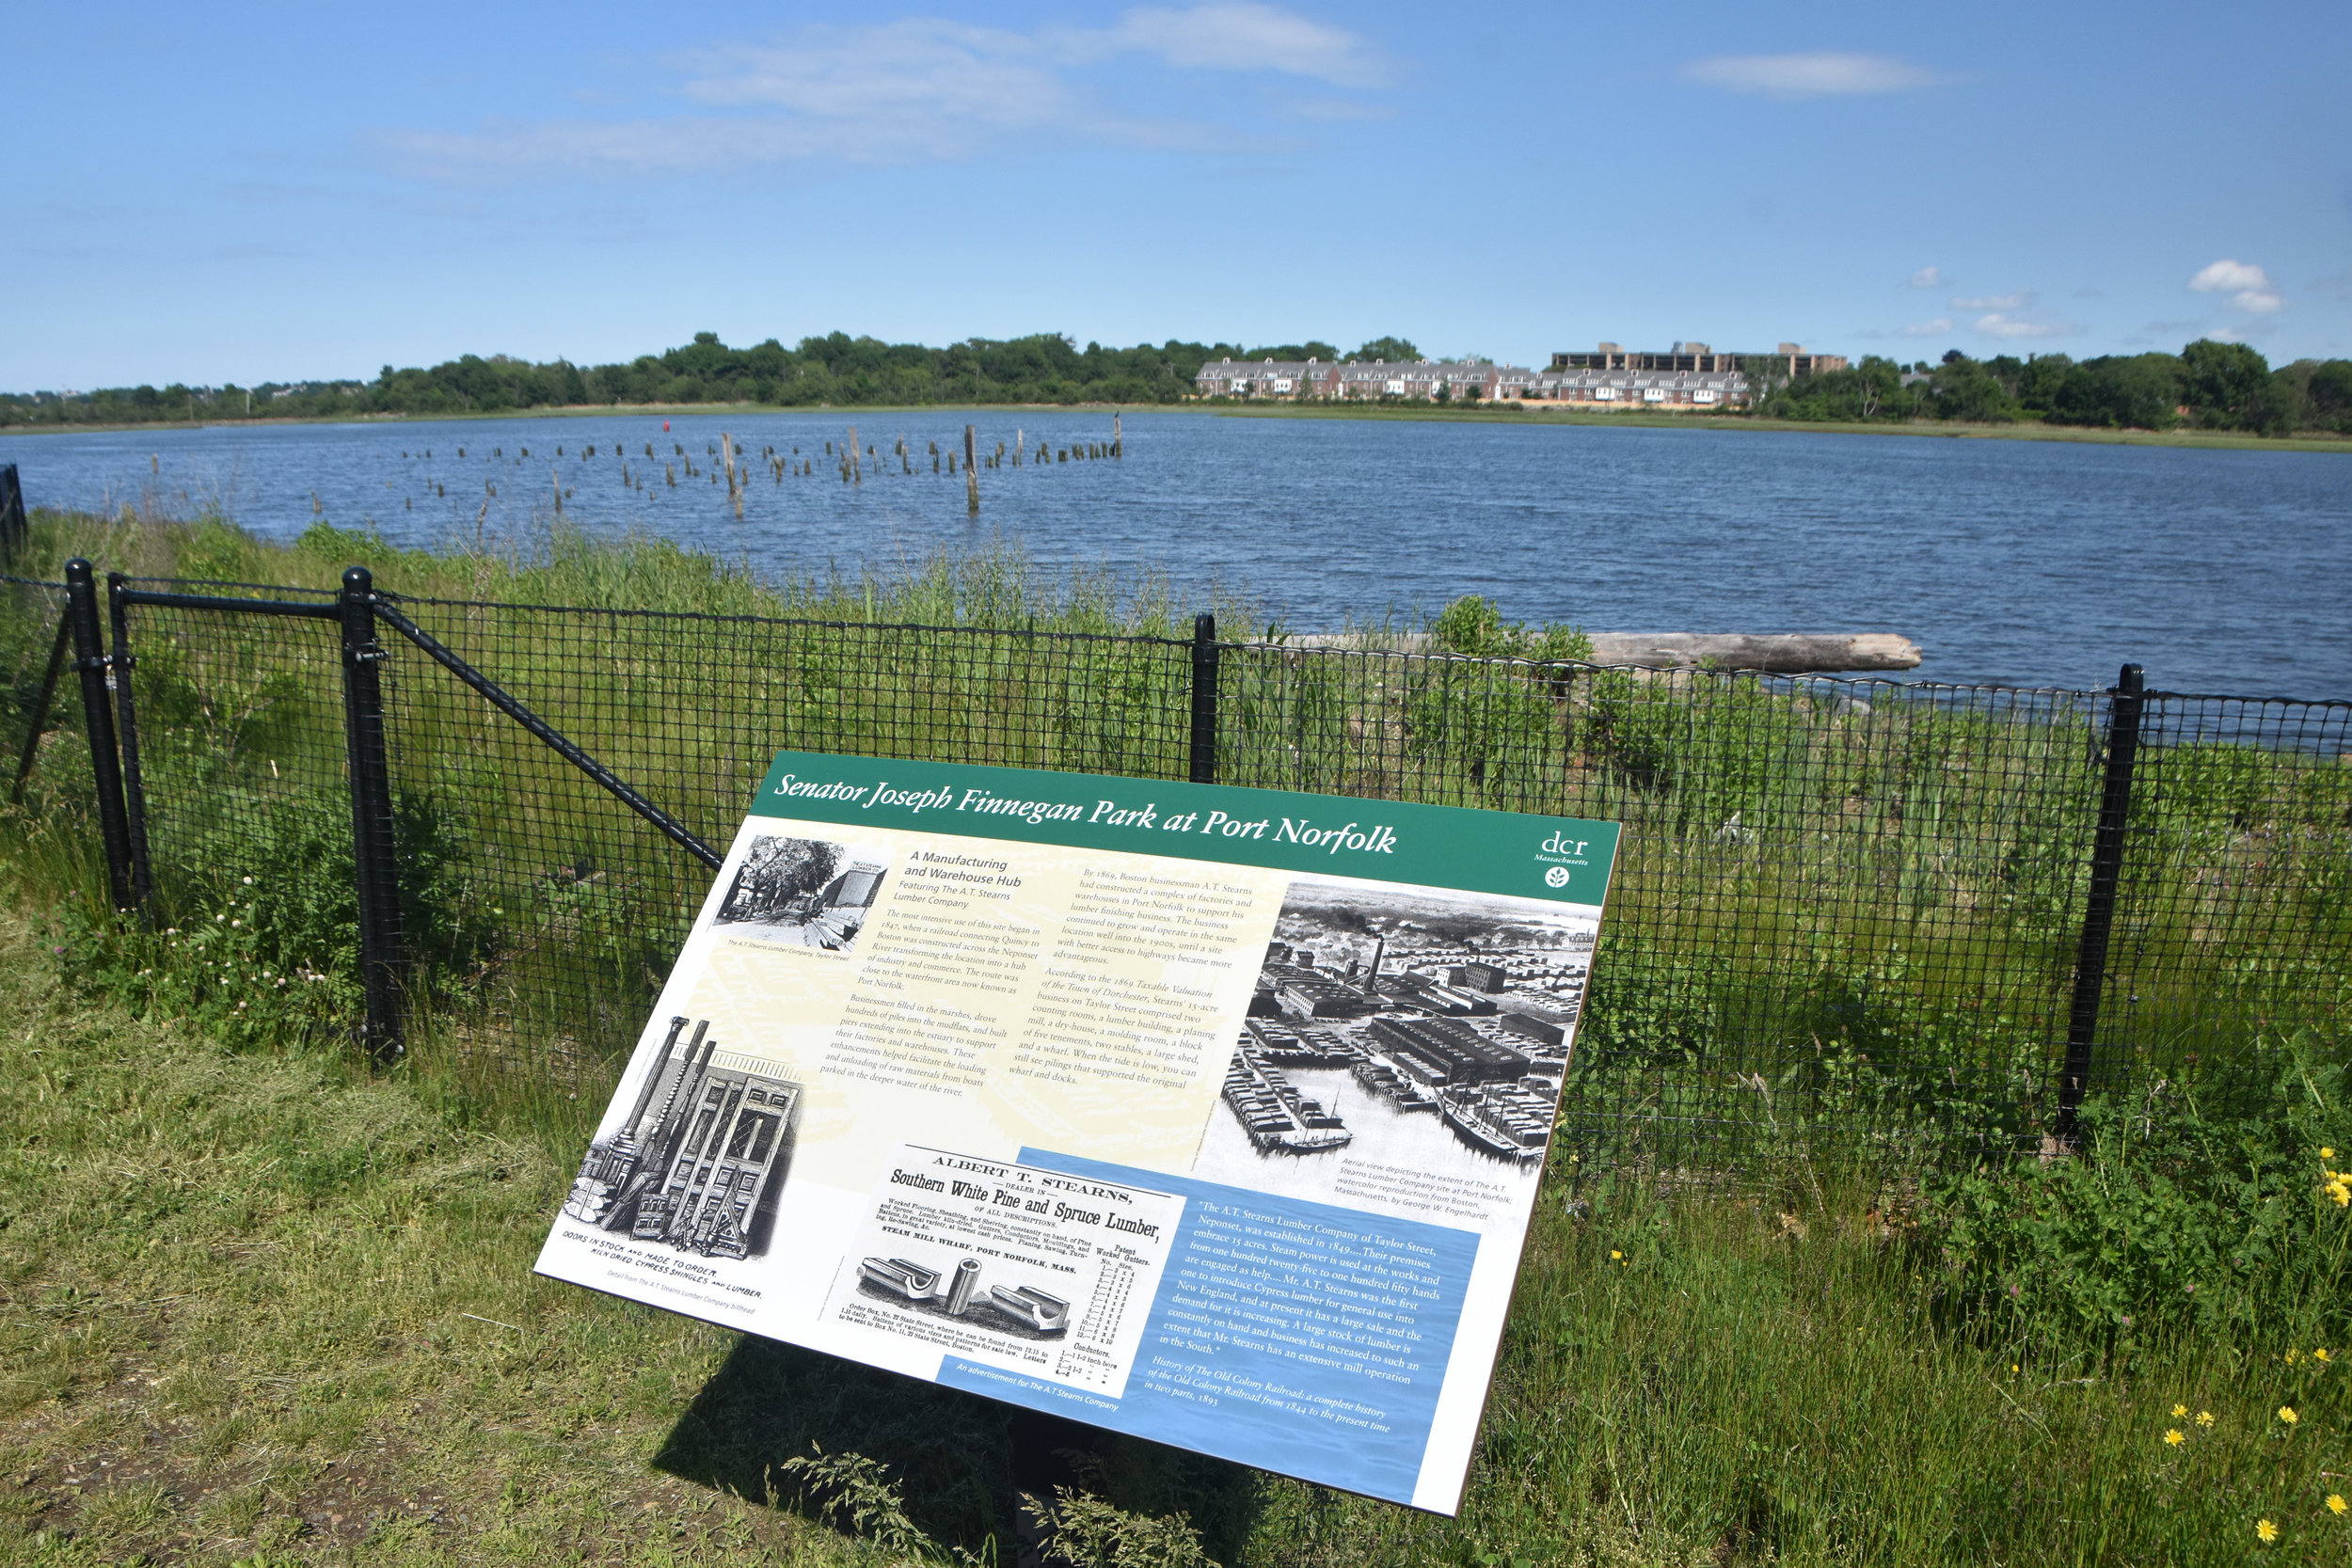  Environmental Signage at Senator Joseph Finnegan Park at Port Norfolk 